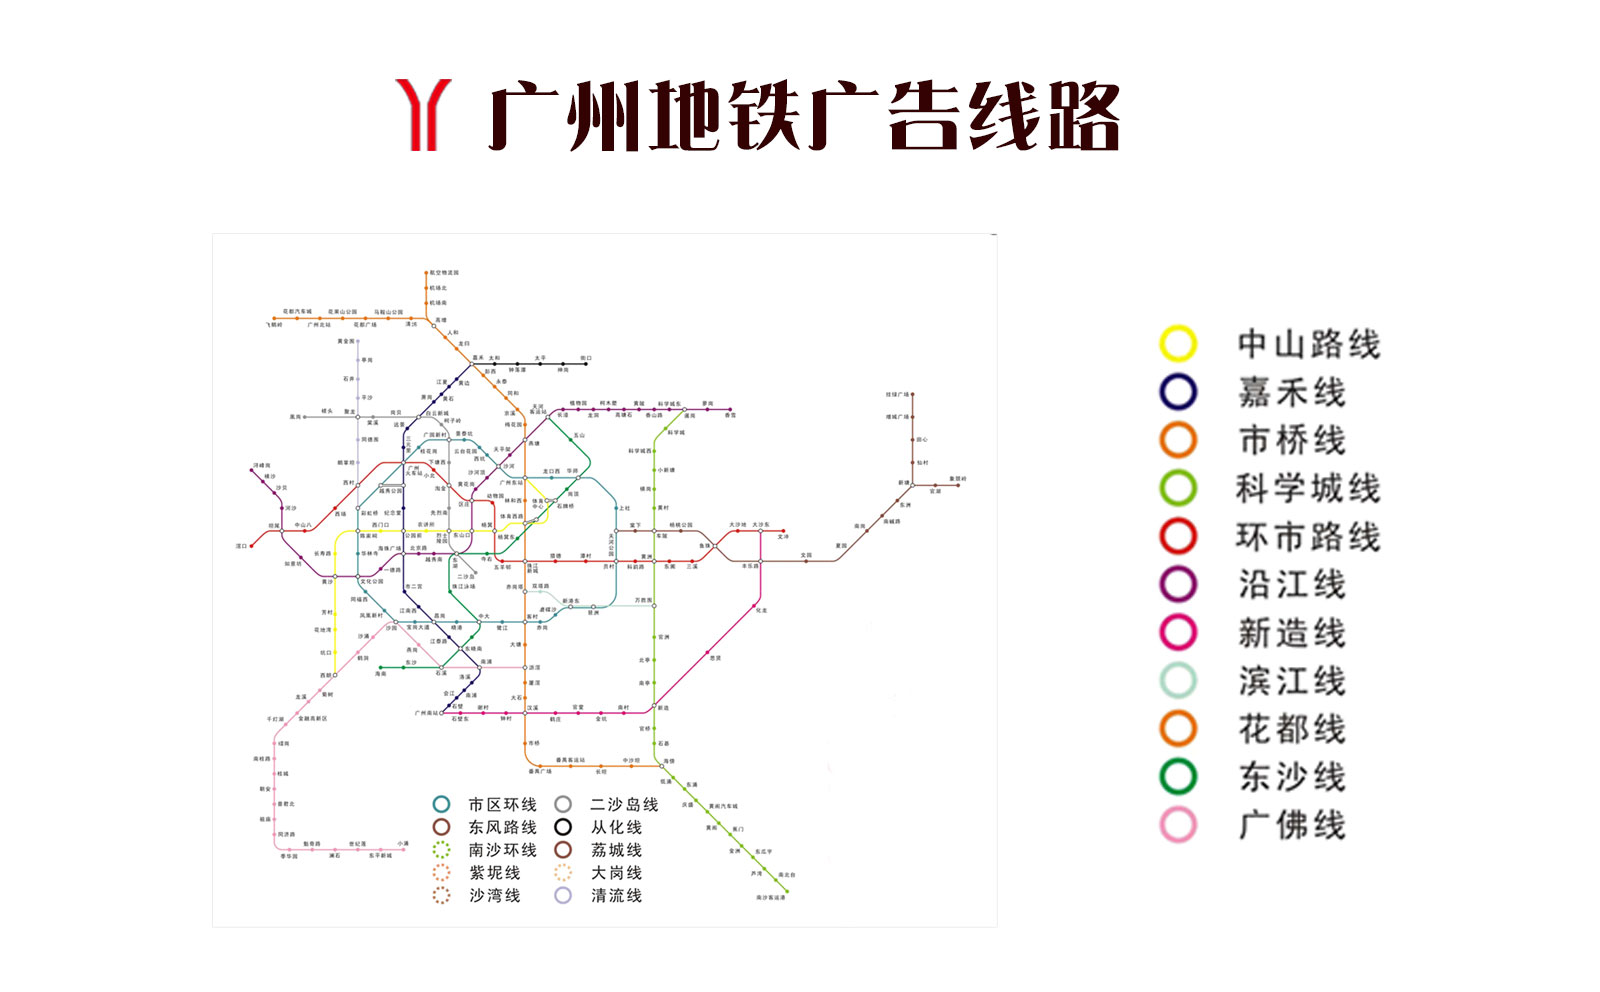 广州地铁广告投放4001583088